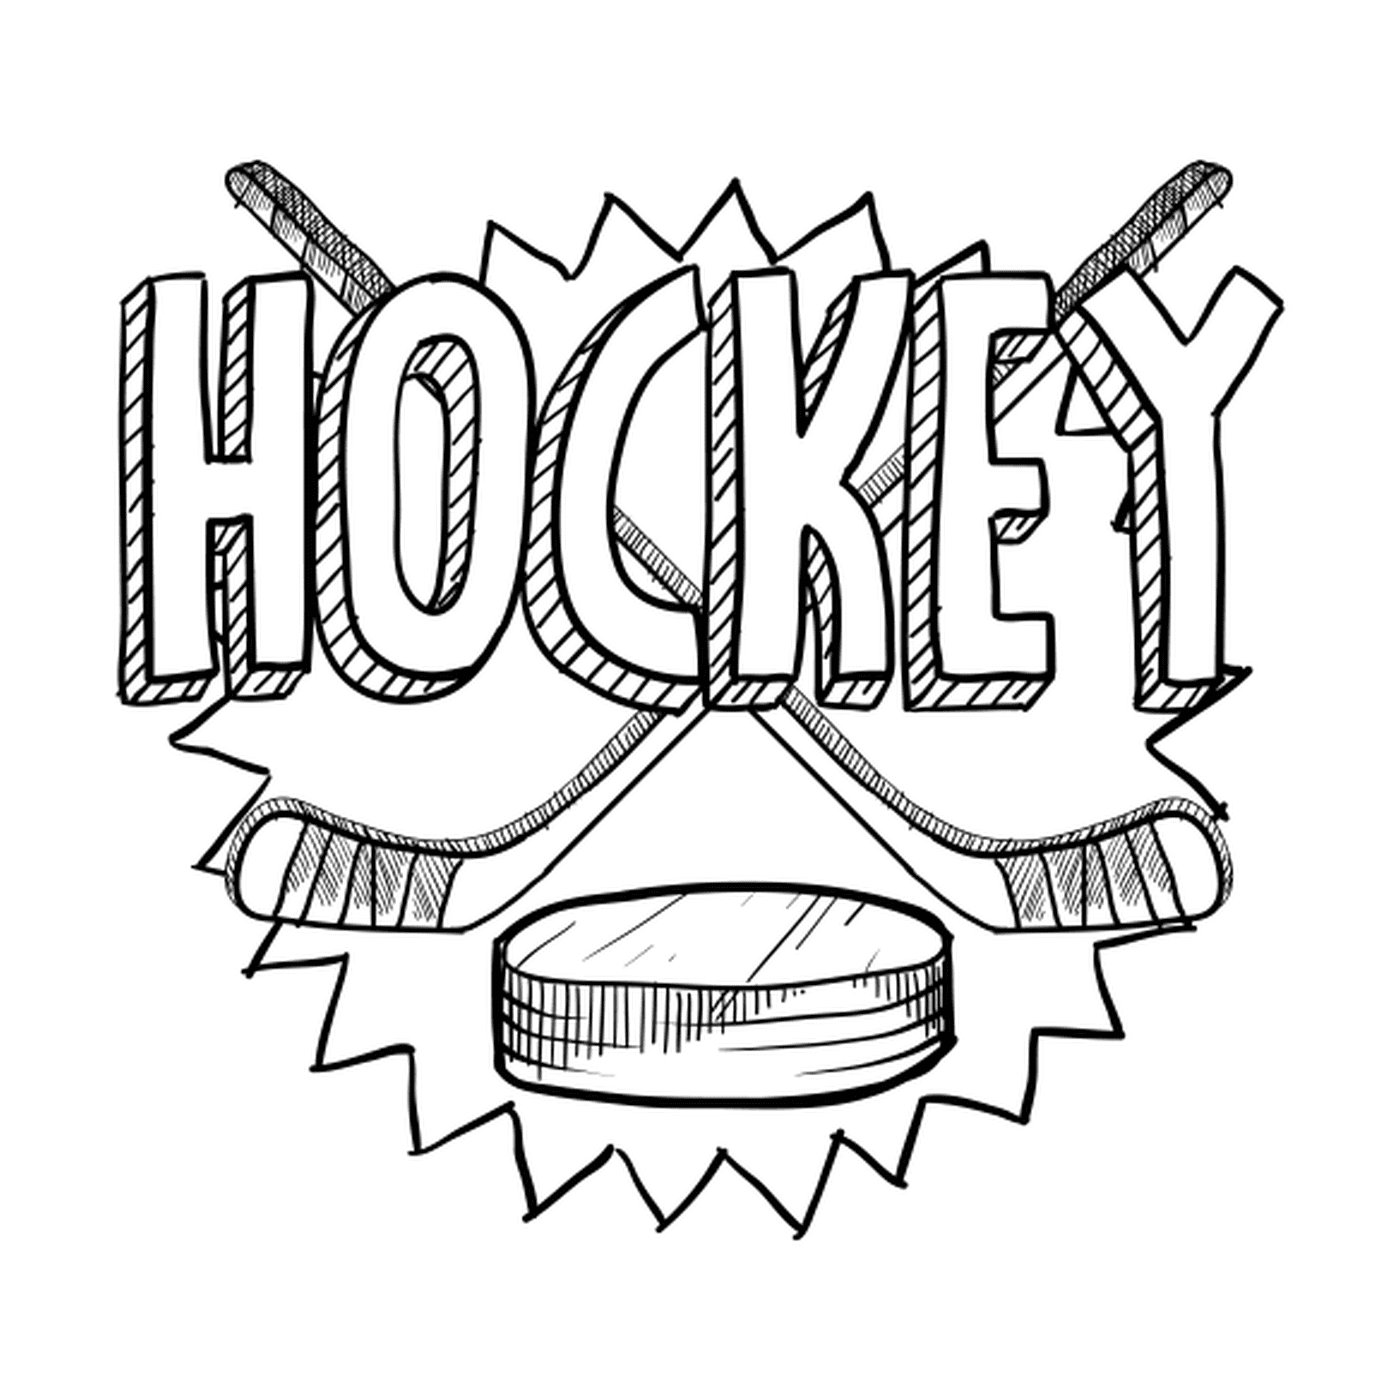  Hockey equipment 